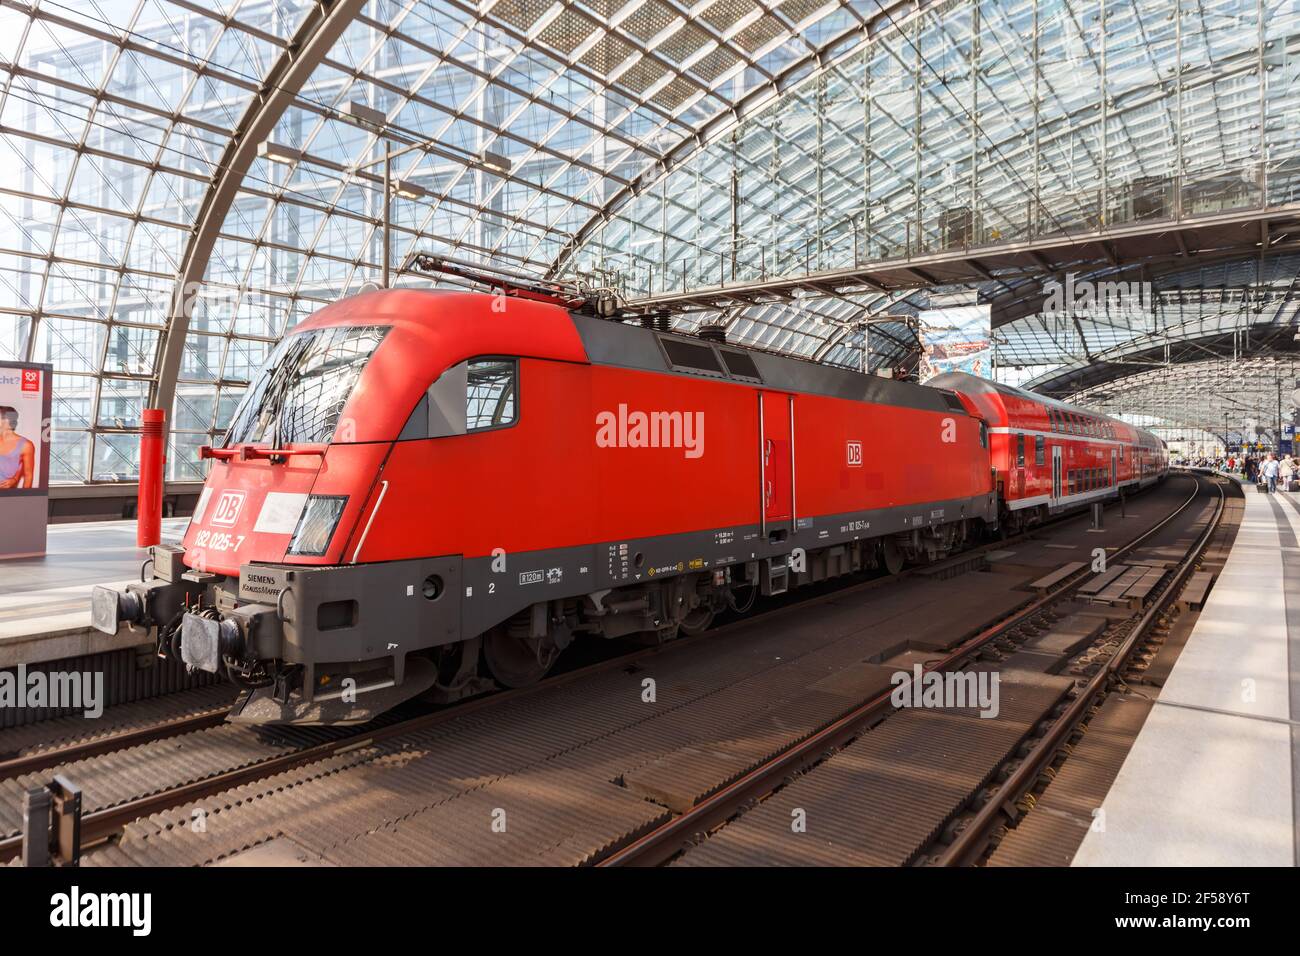 Berlino, Germania - 20 agosto 2020: Treno regionale suburbano alla stazione ferroviaria principale di Berlino Hauptbahnhof Hbf in Germania. Foto Stock